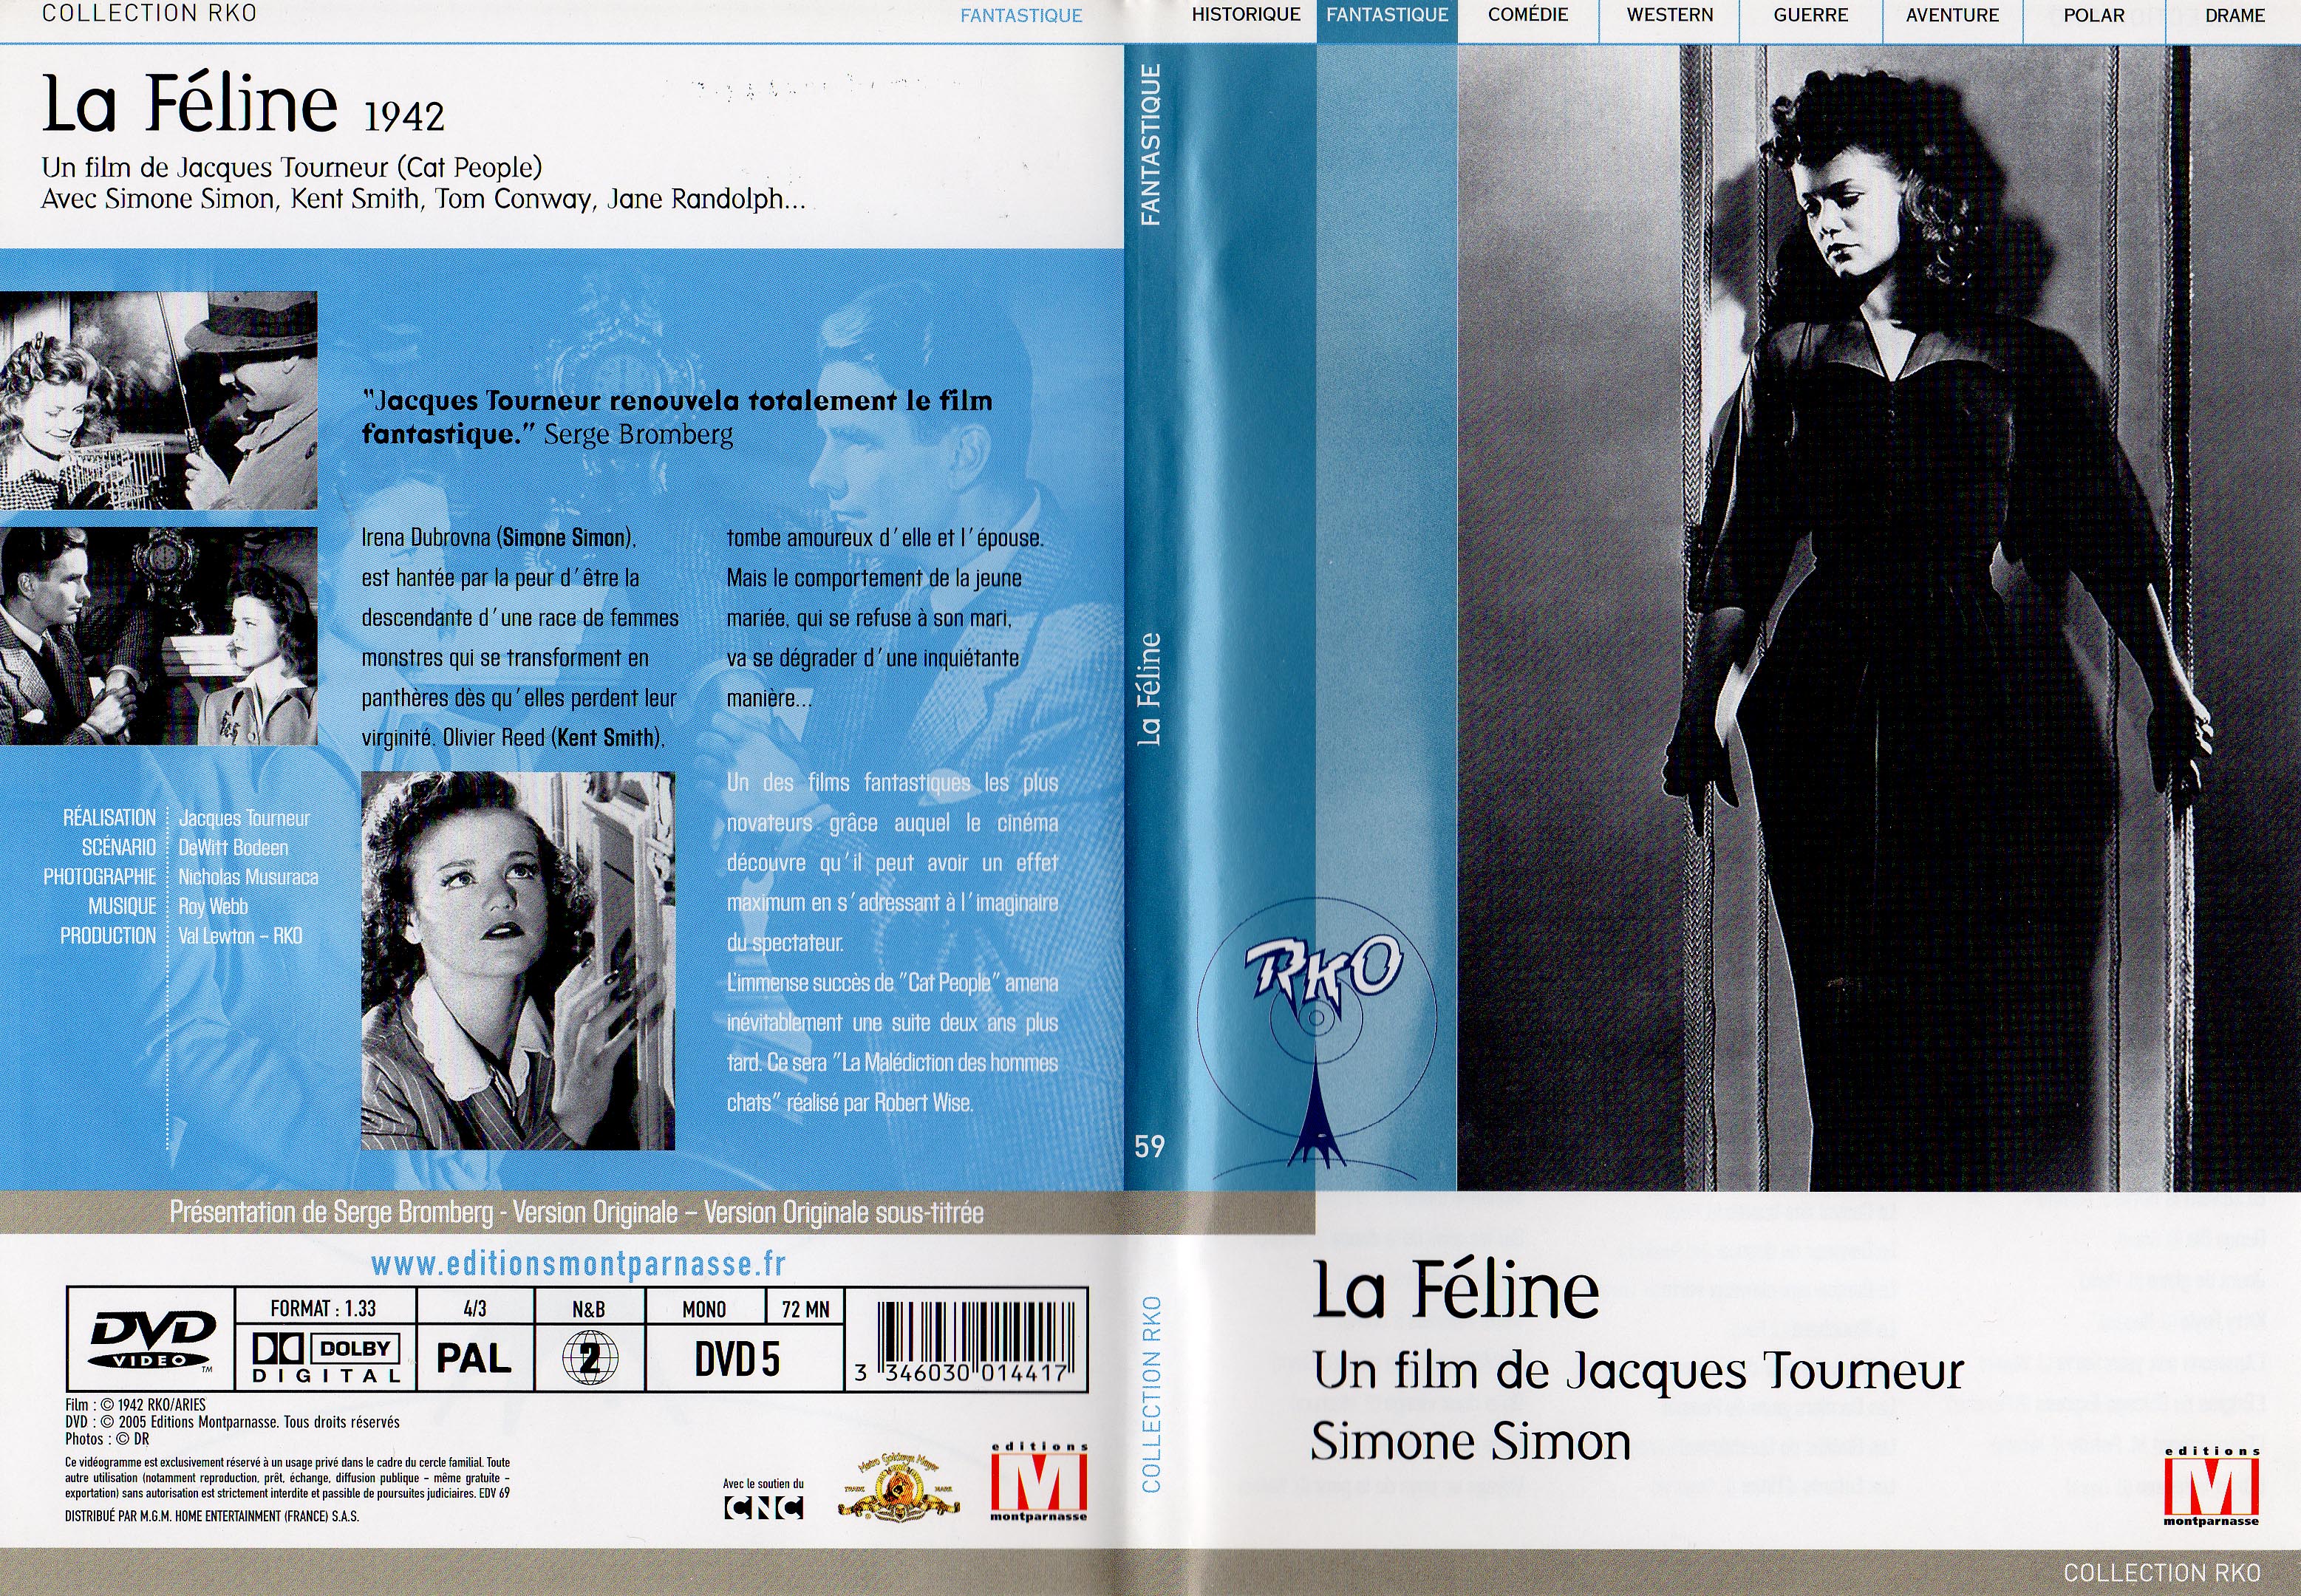 Jaquette DVD La feline (1942) v2